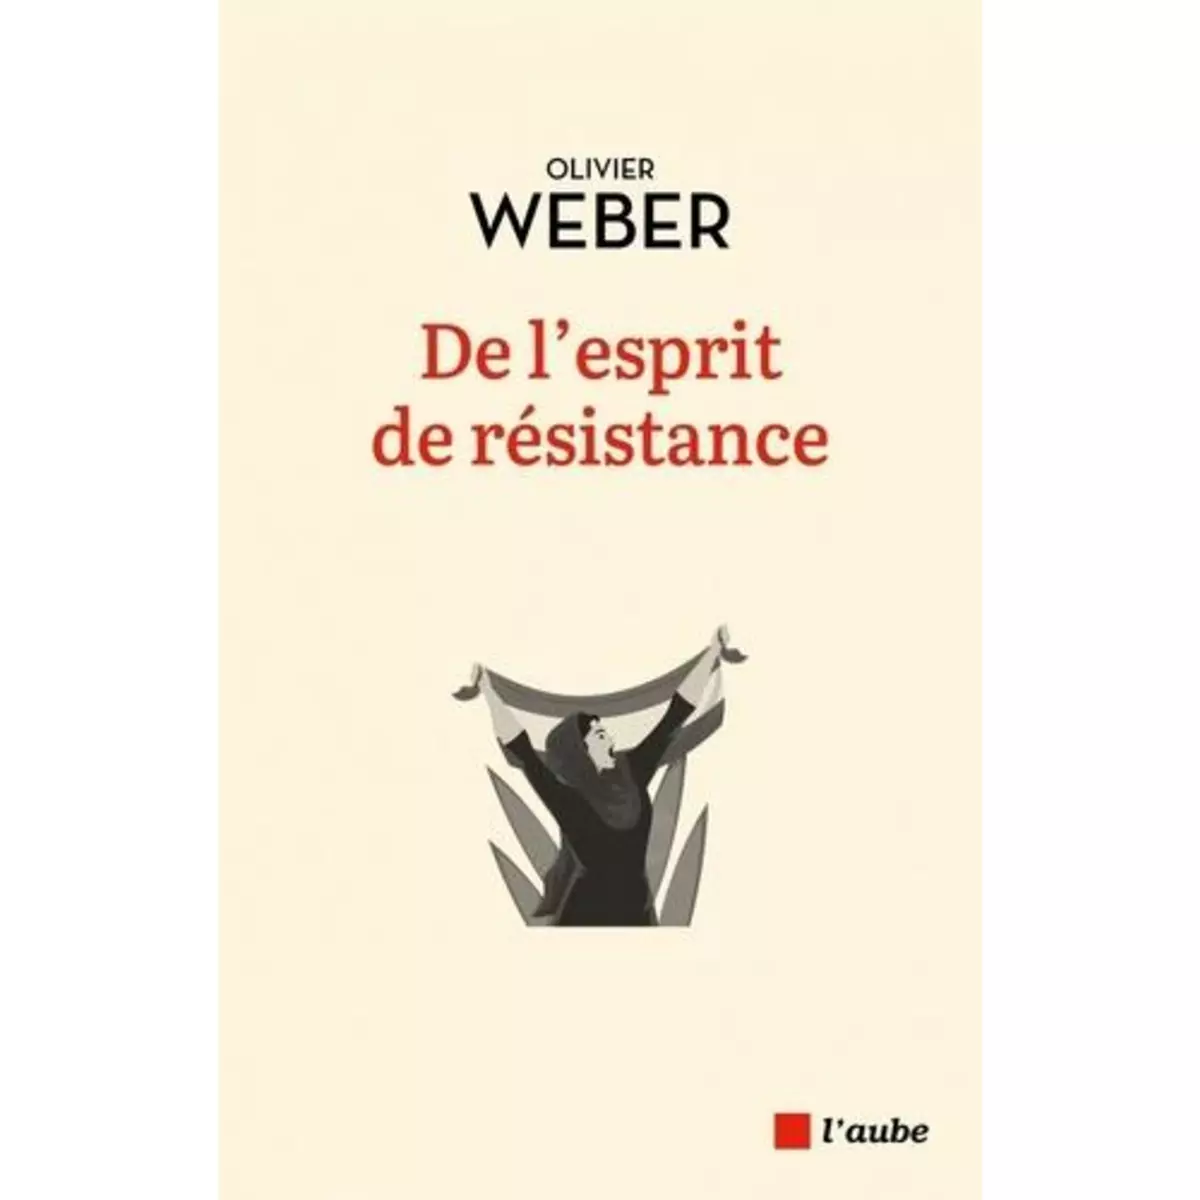  DE L'ESPRIT DE RESISTANCE, Weber Olivier